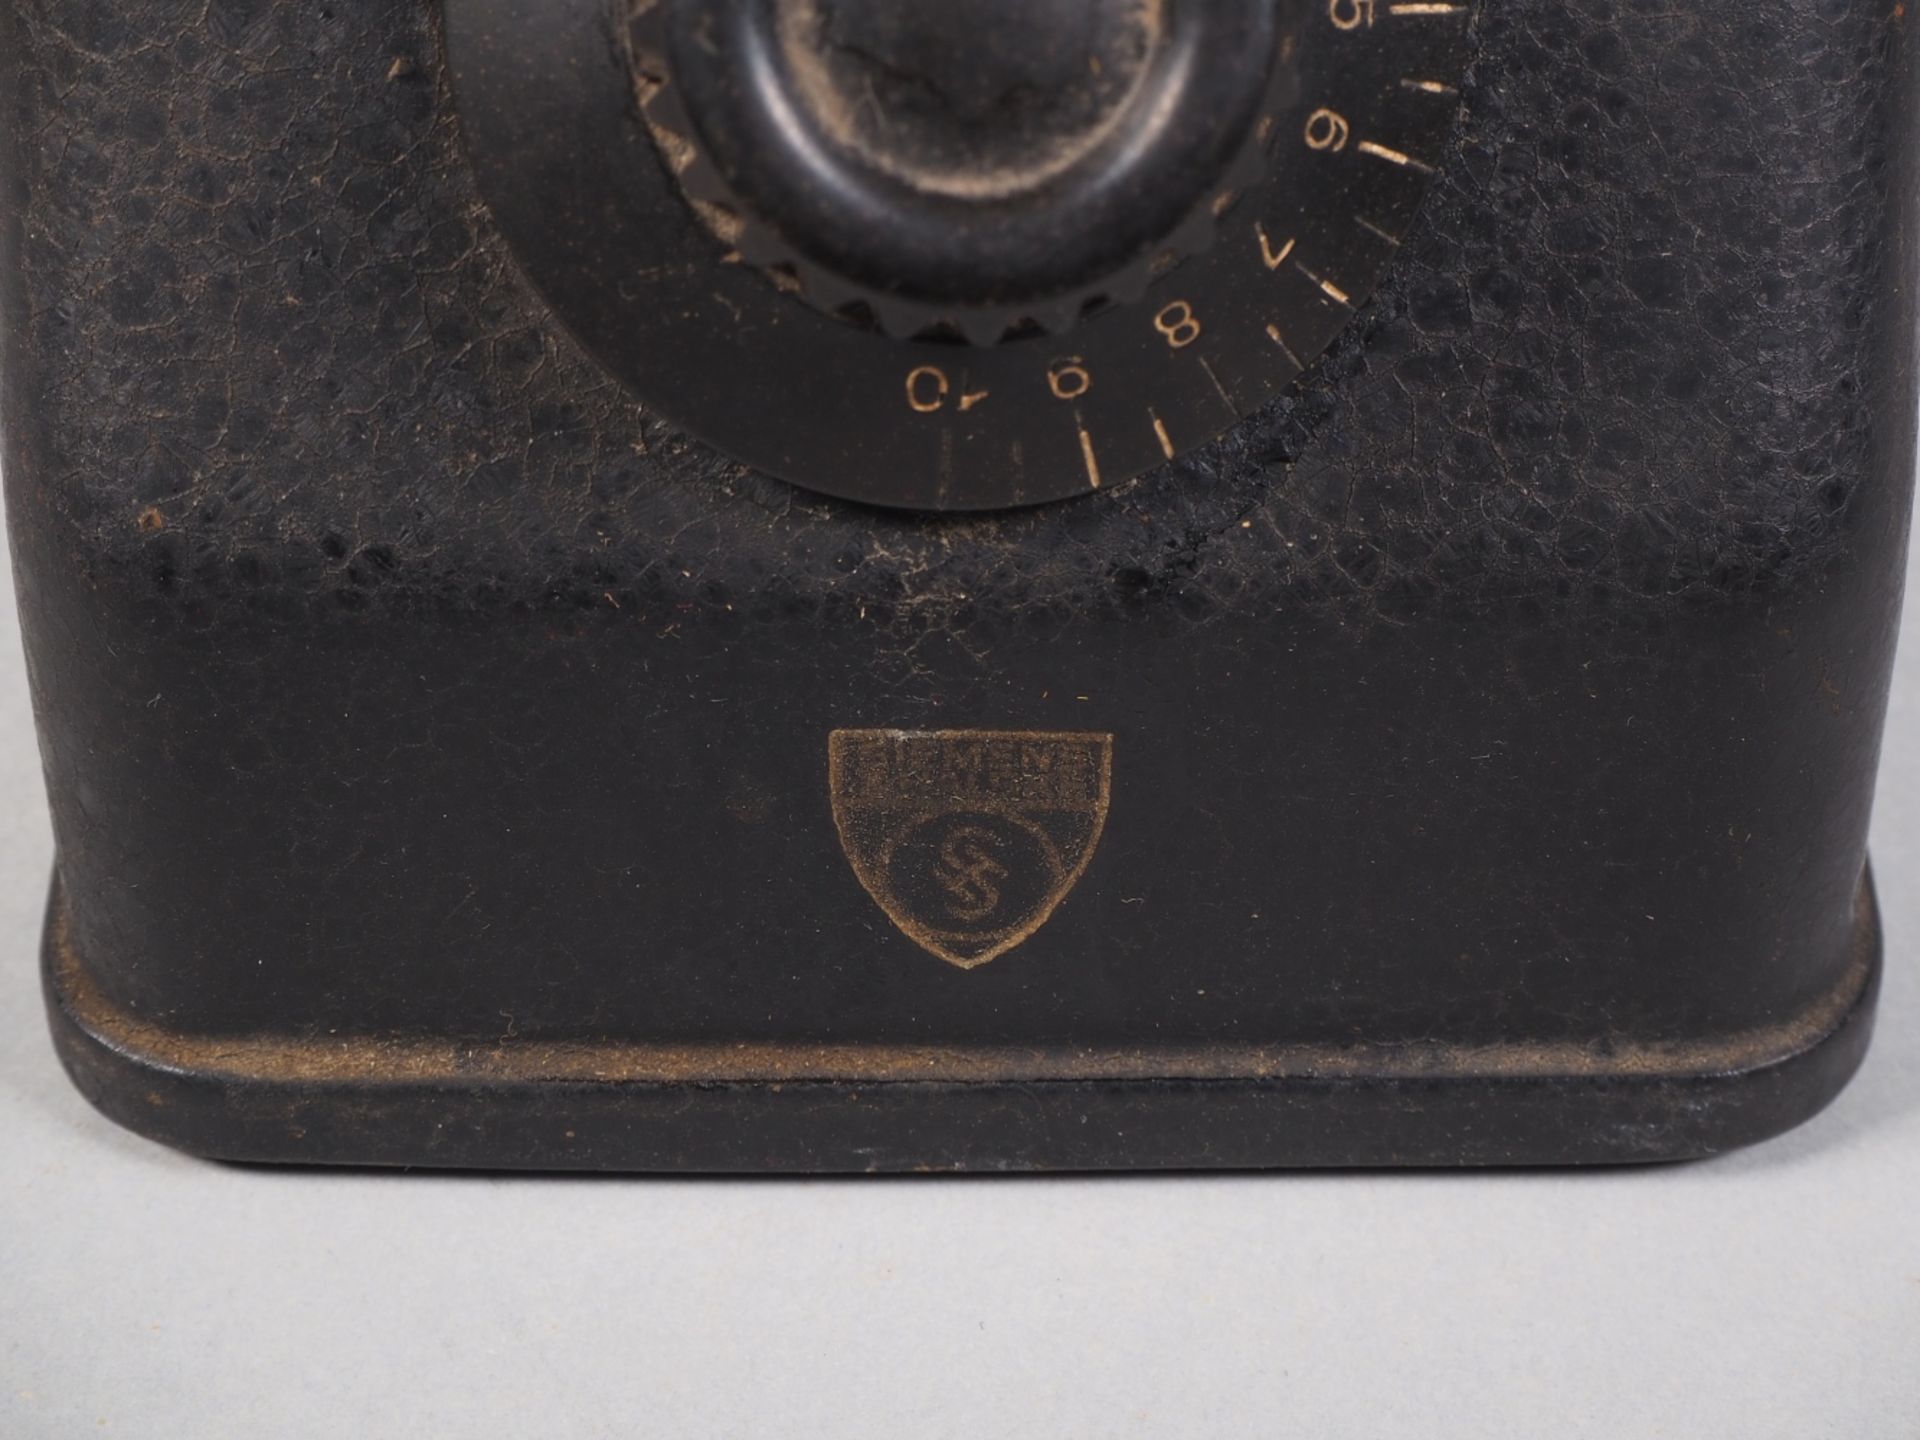 Siemens Detektorempfänger Rfe 20 um 1930 - Bild 3 aus 4